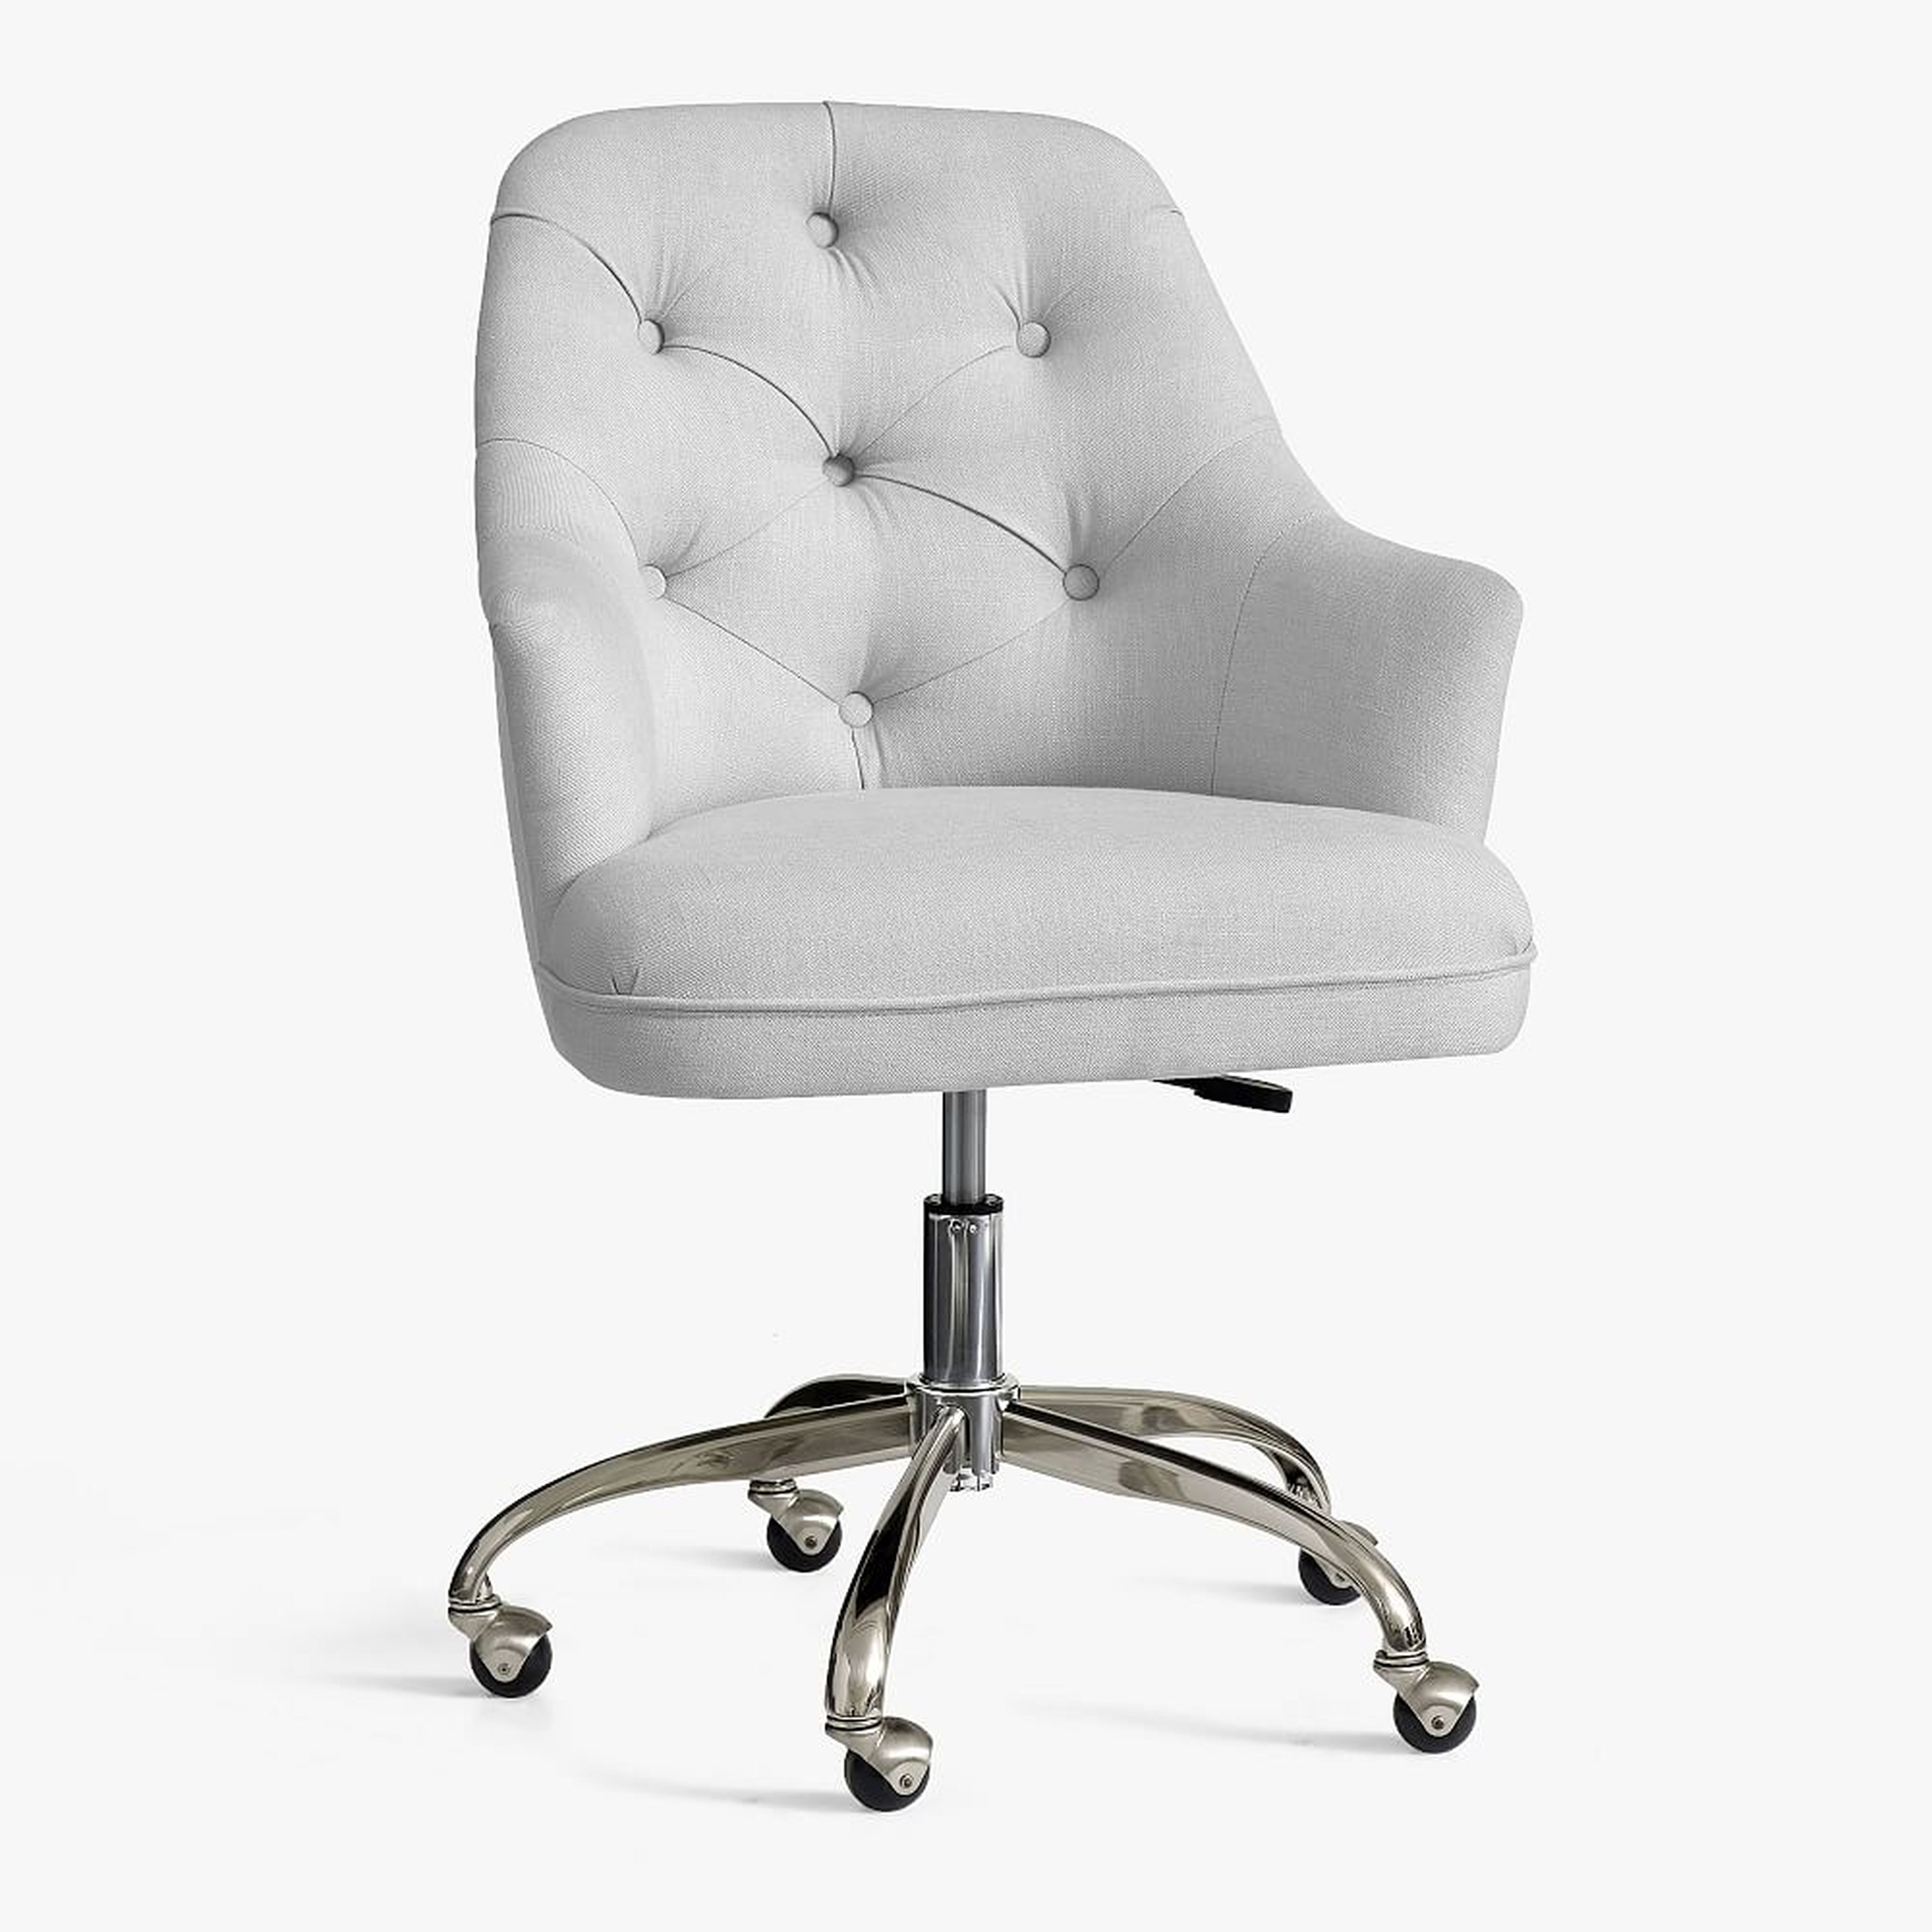 Tufted Swivel Desk Chair, Linen Blend Light Gray - Pottery Barn Teen